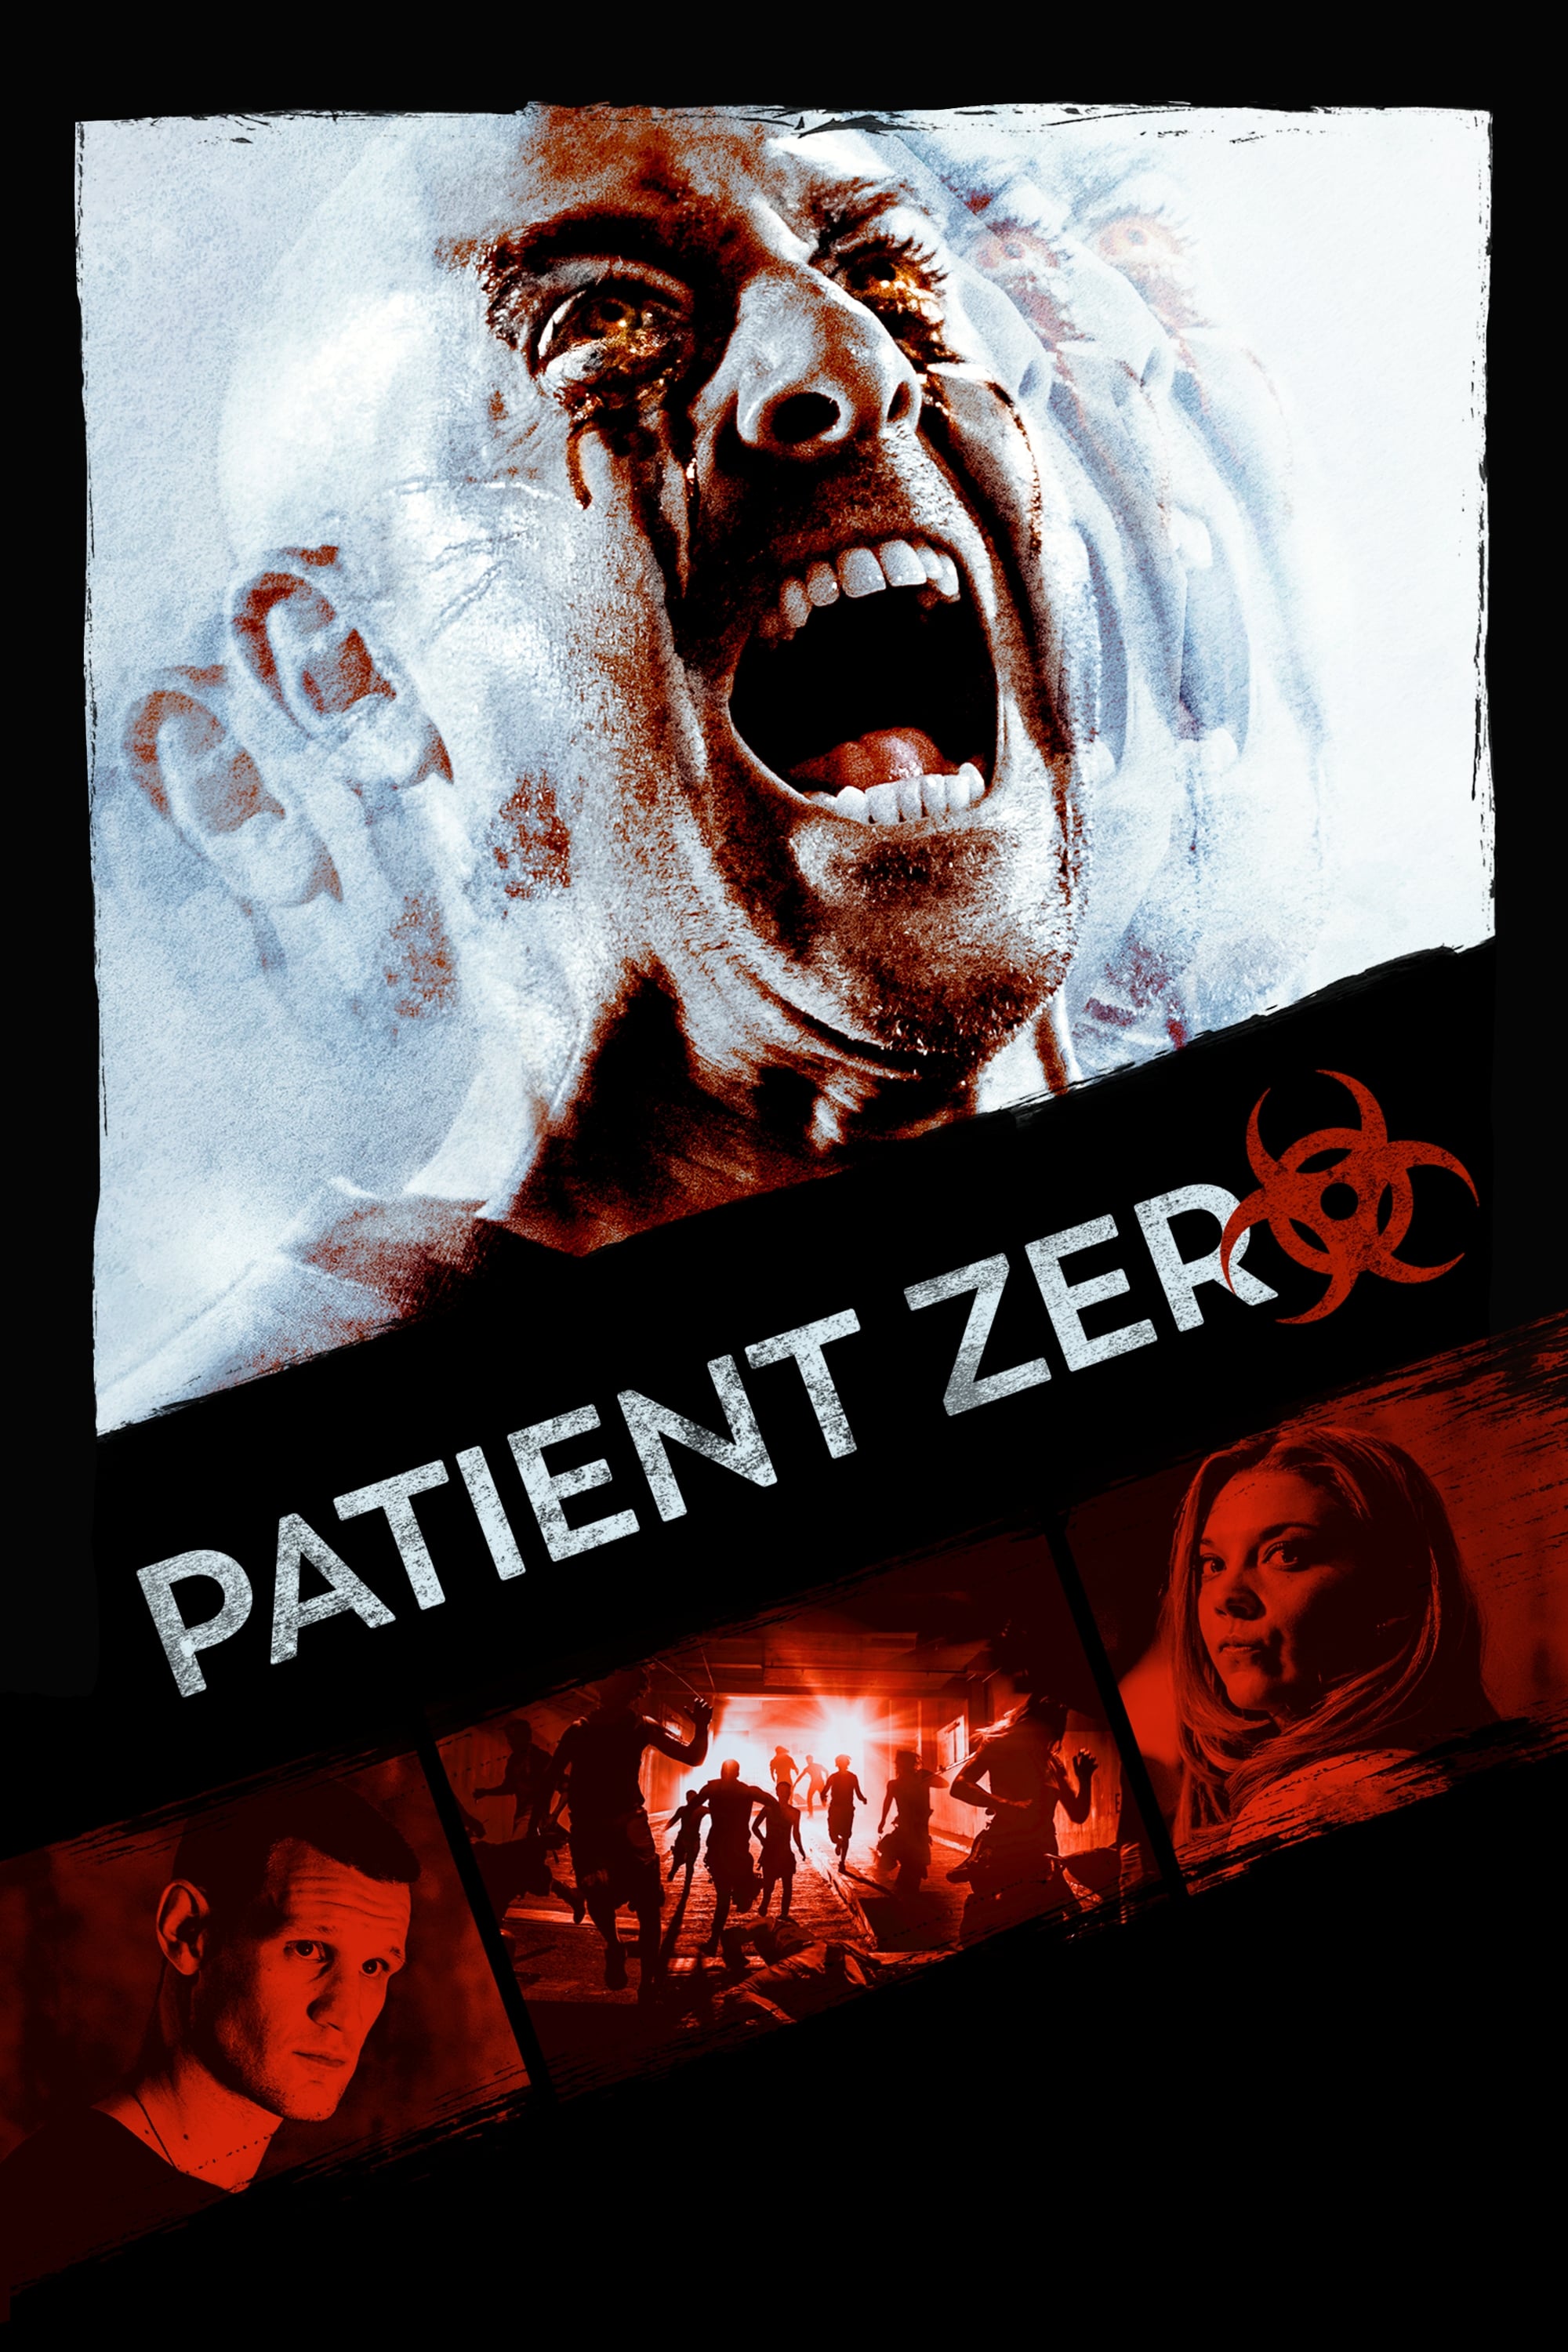 Extinction Patient Zero 2014 Imdb